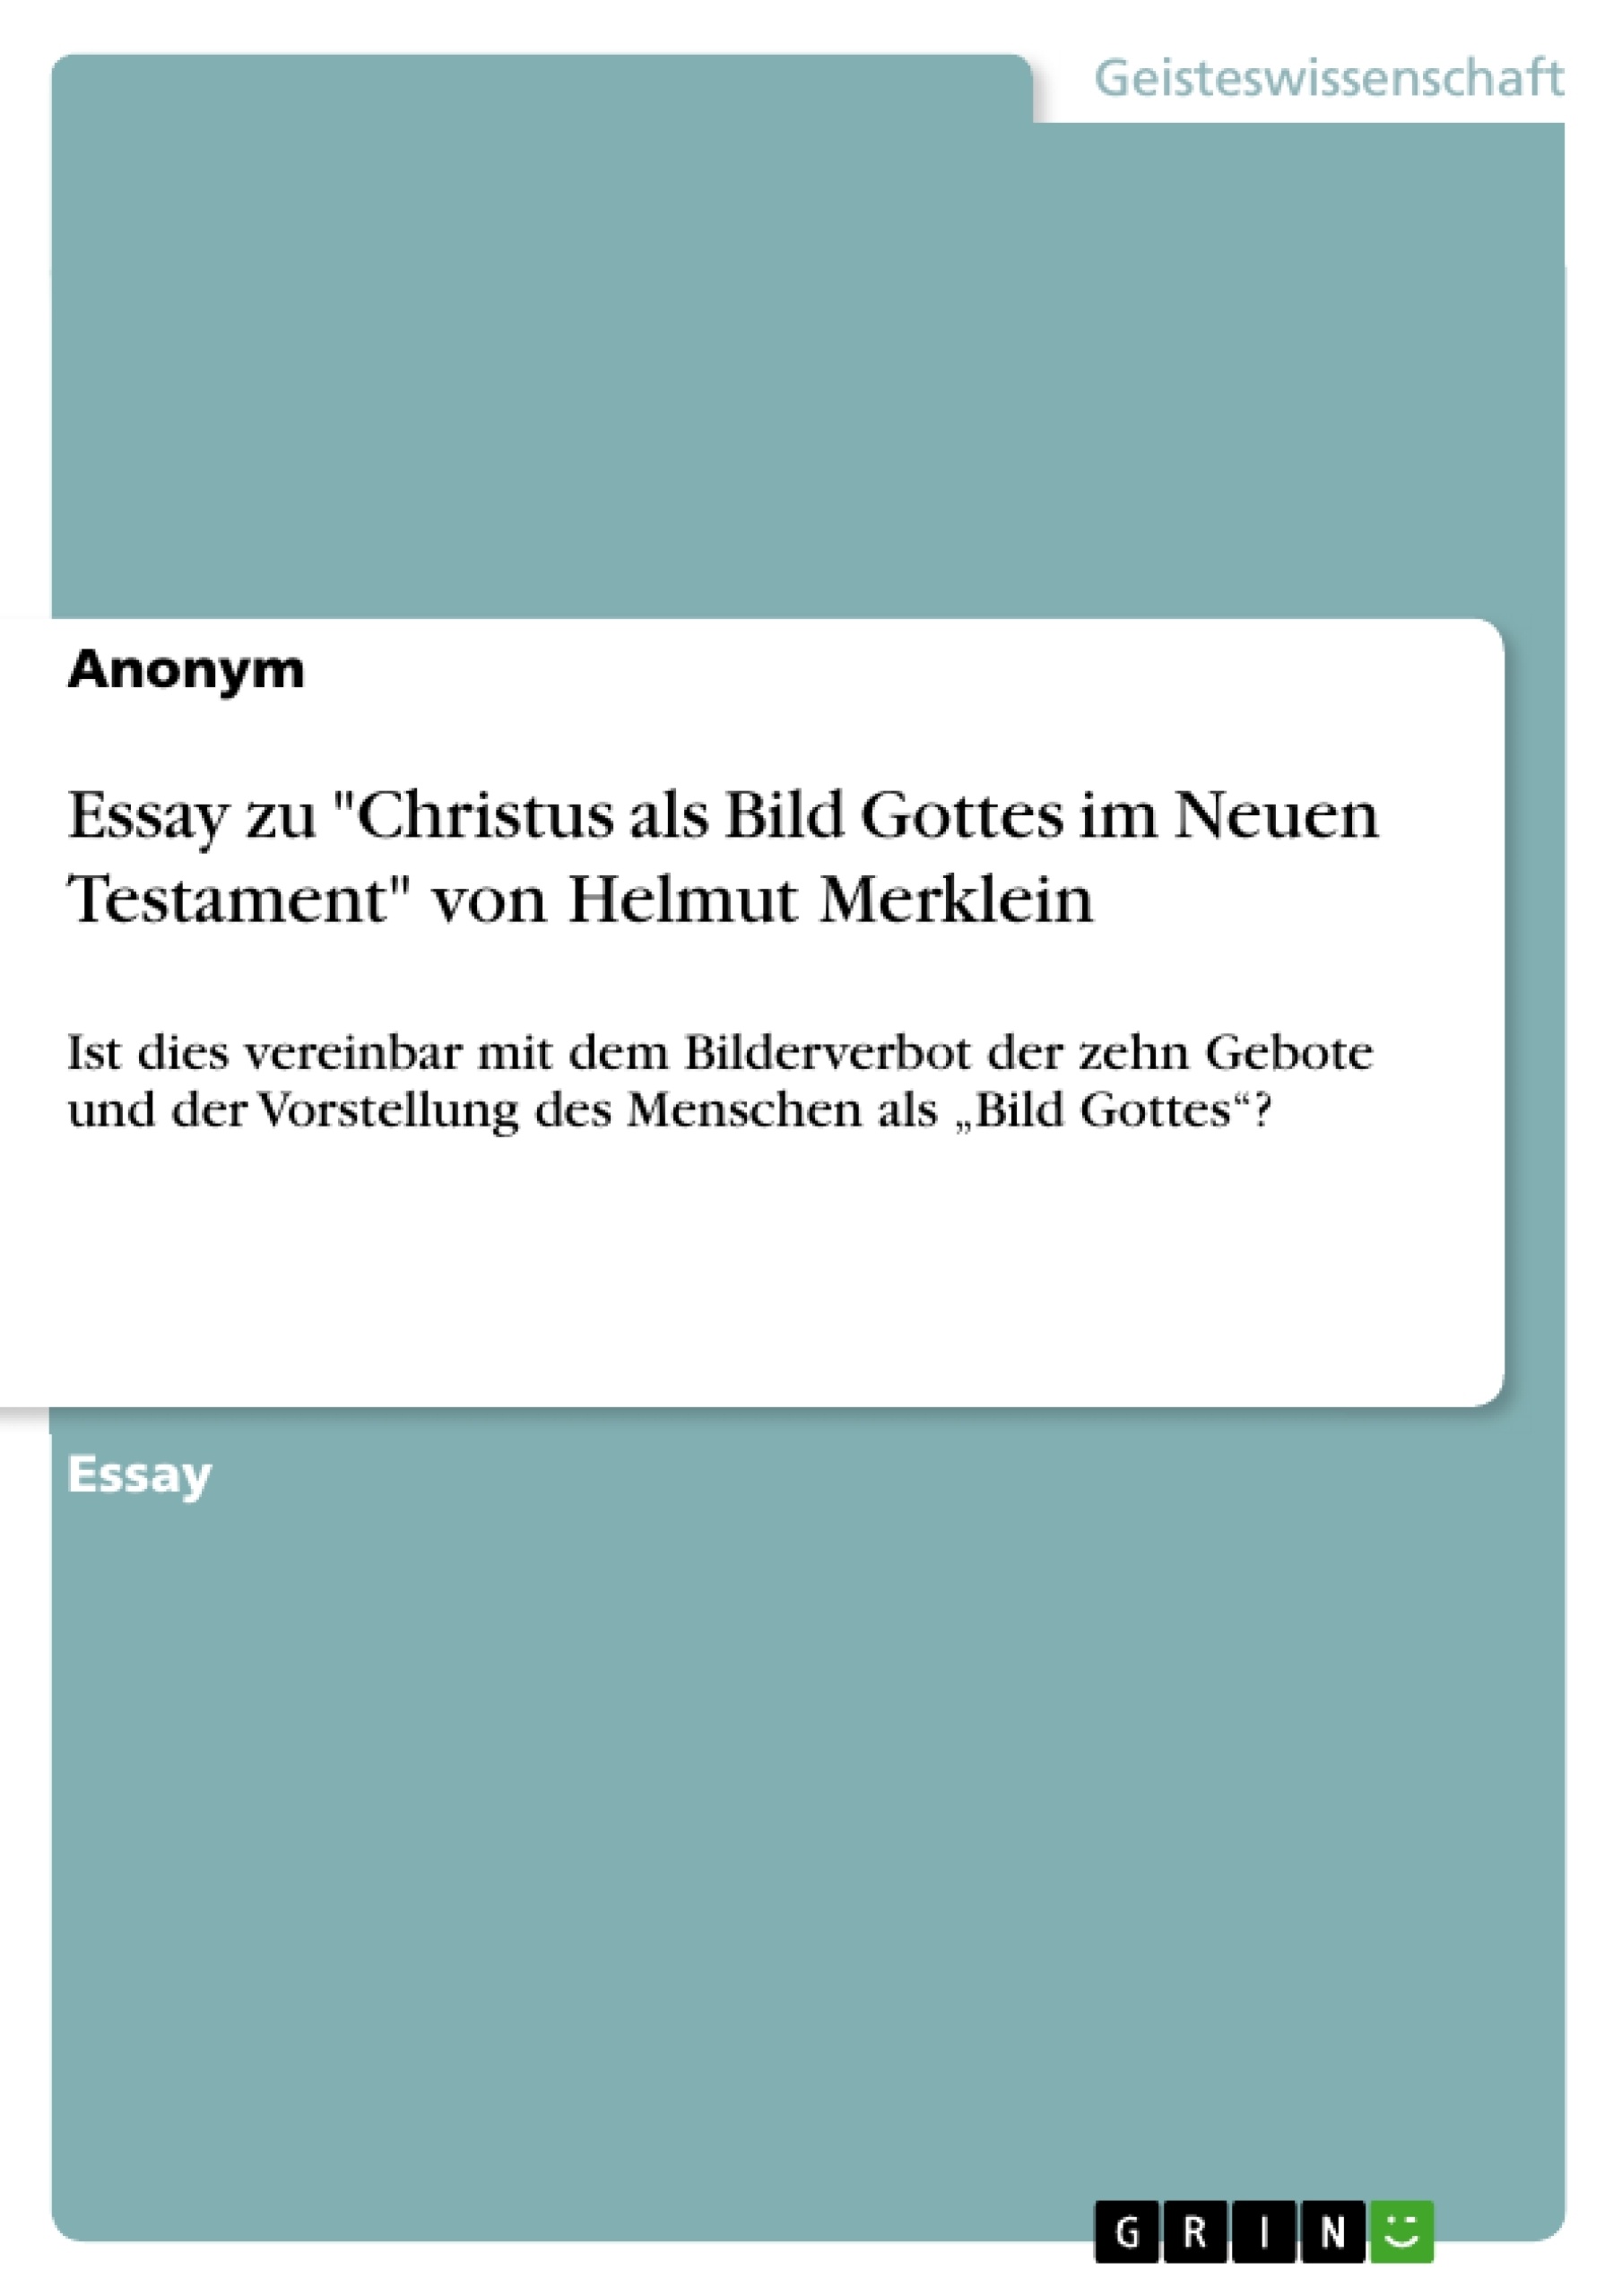 Titre: Essay zu "Christus als Bild Gottes im Neuen Testament" von Helmut Merklein